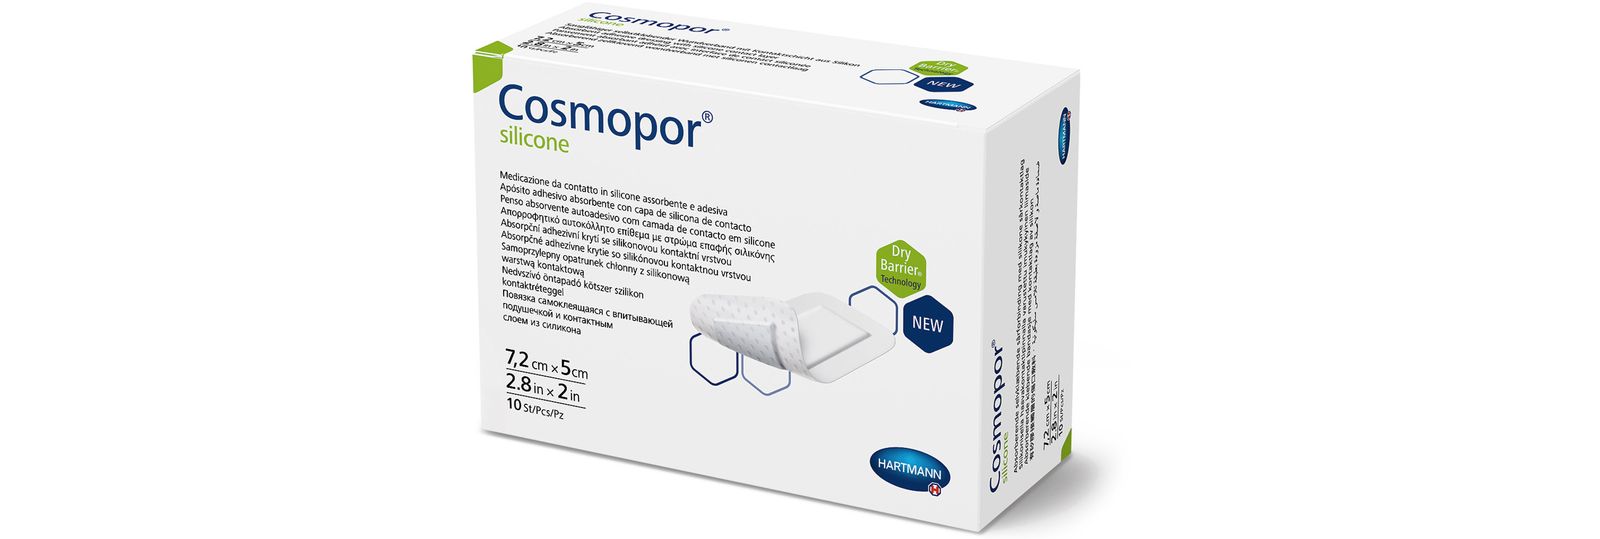 Cosmopor<sup>®</sup> silicone – für Haut mit hohen Ansprüchen